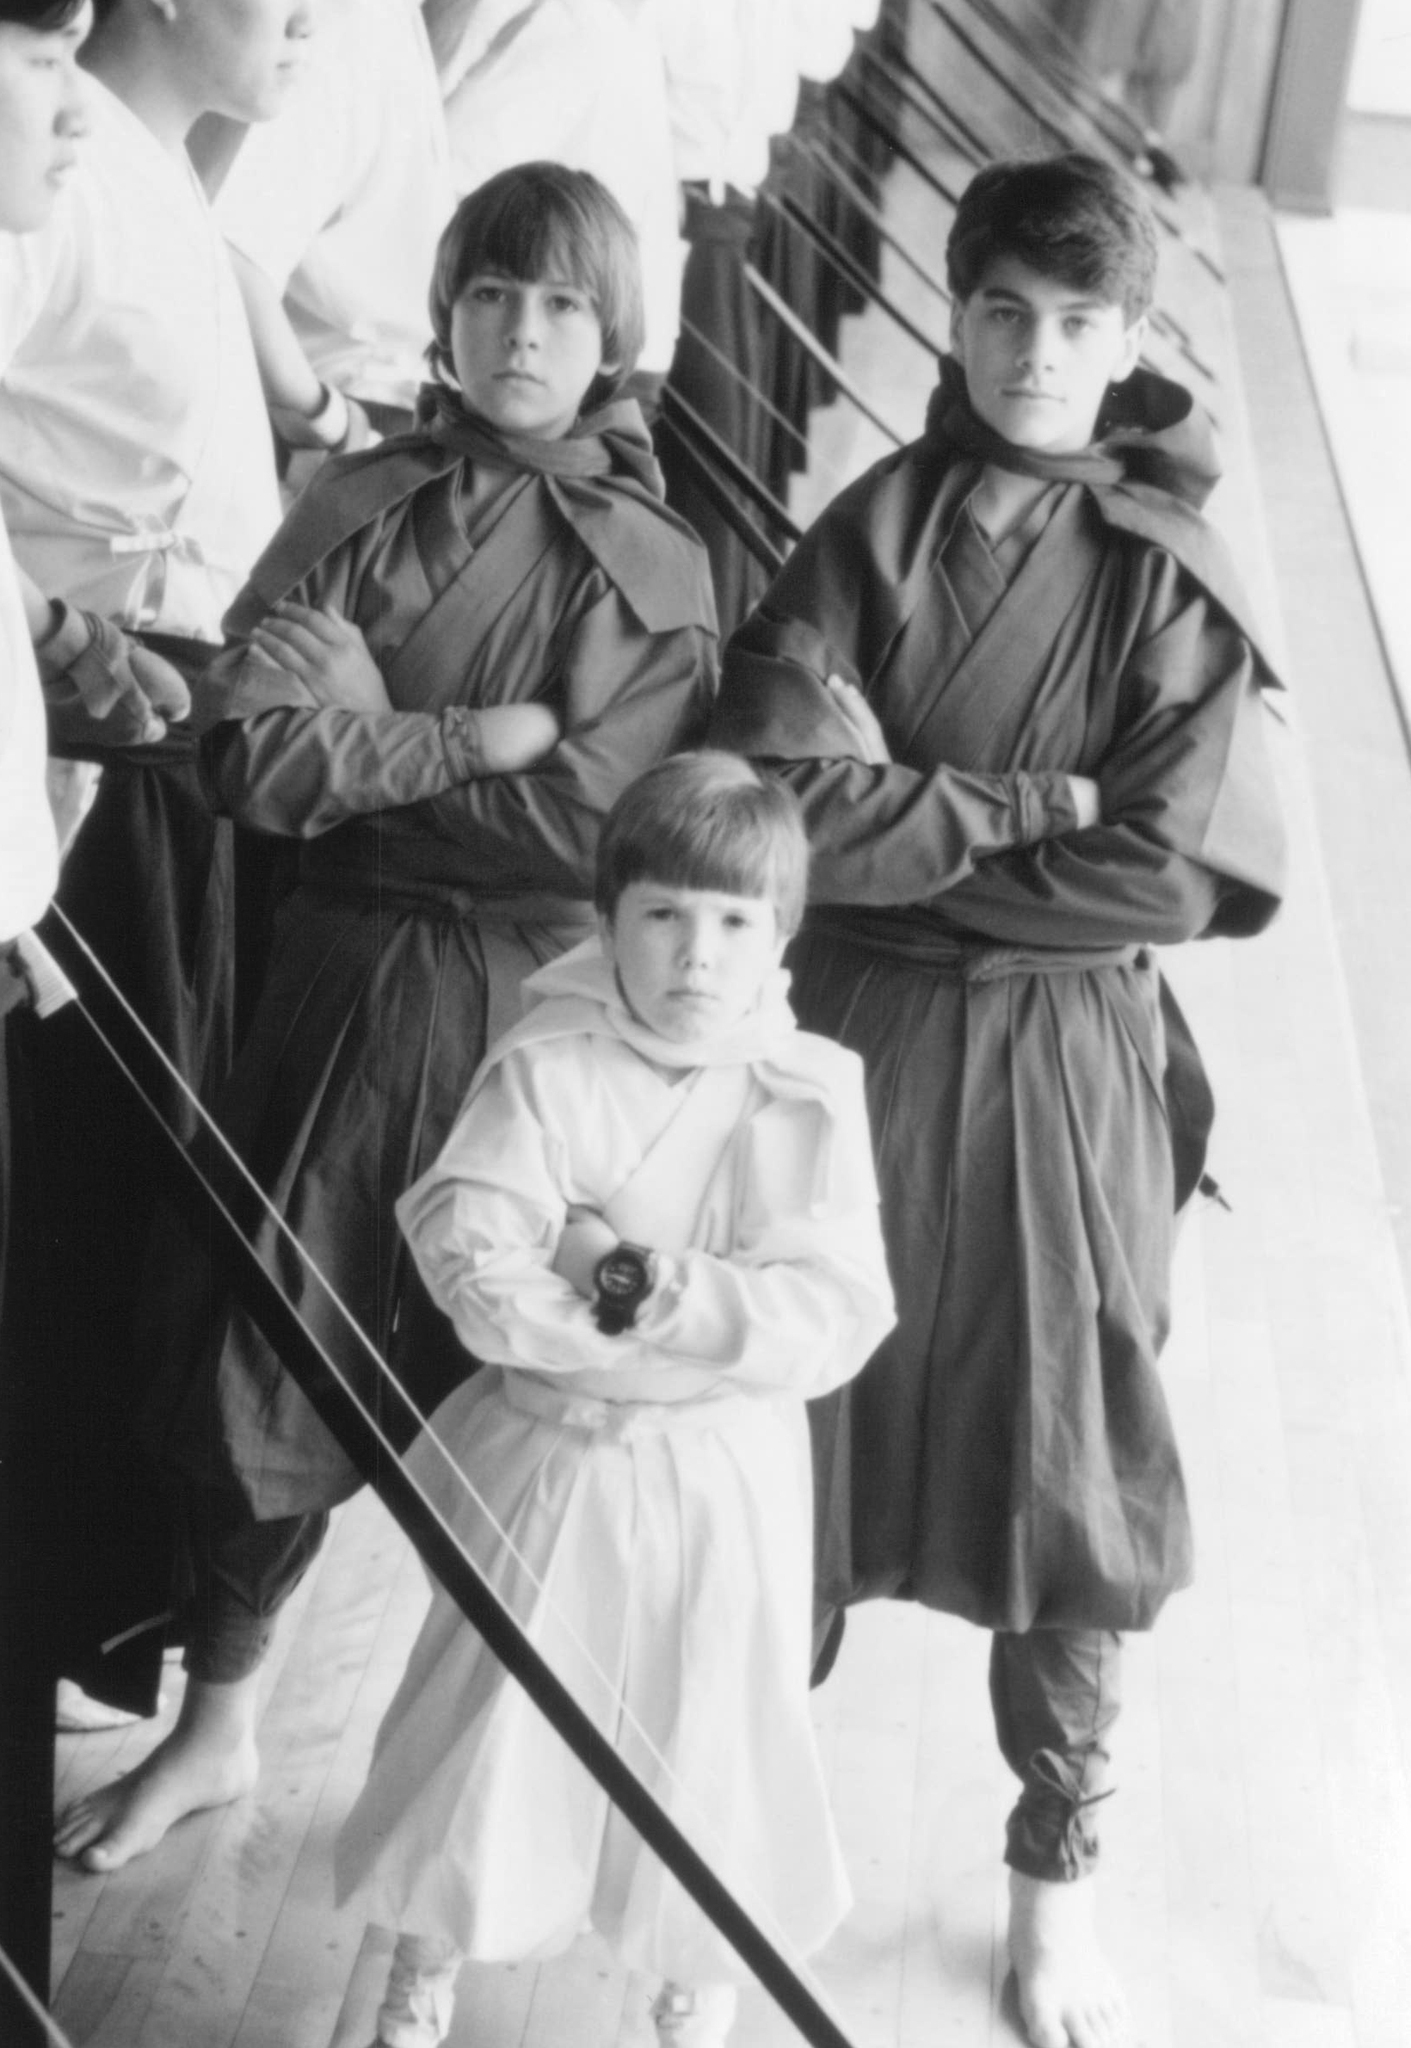 Still of J. Evan Bonifant, Sean Fox and Max Elliott Slade in 3 Ninjas Kick Back (1994)